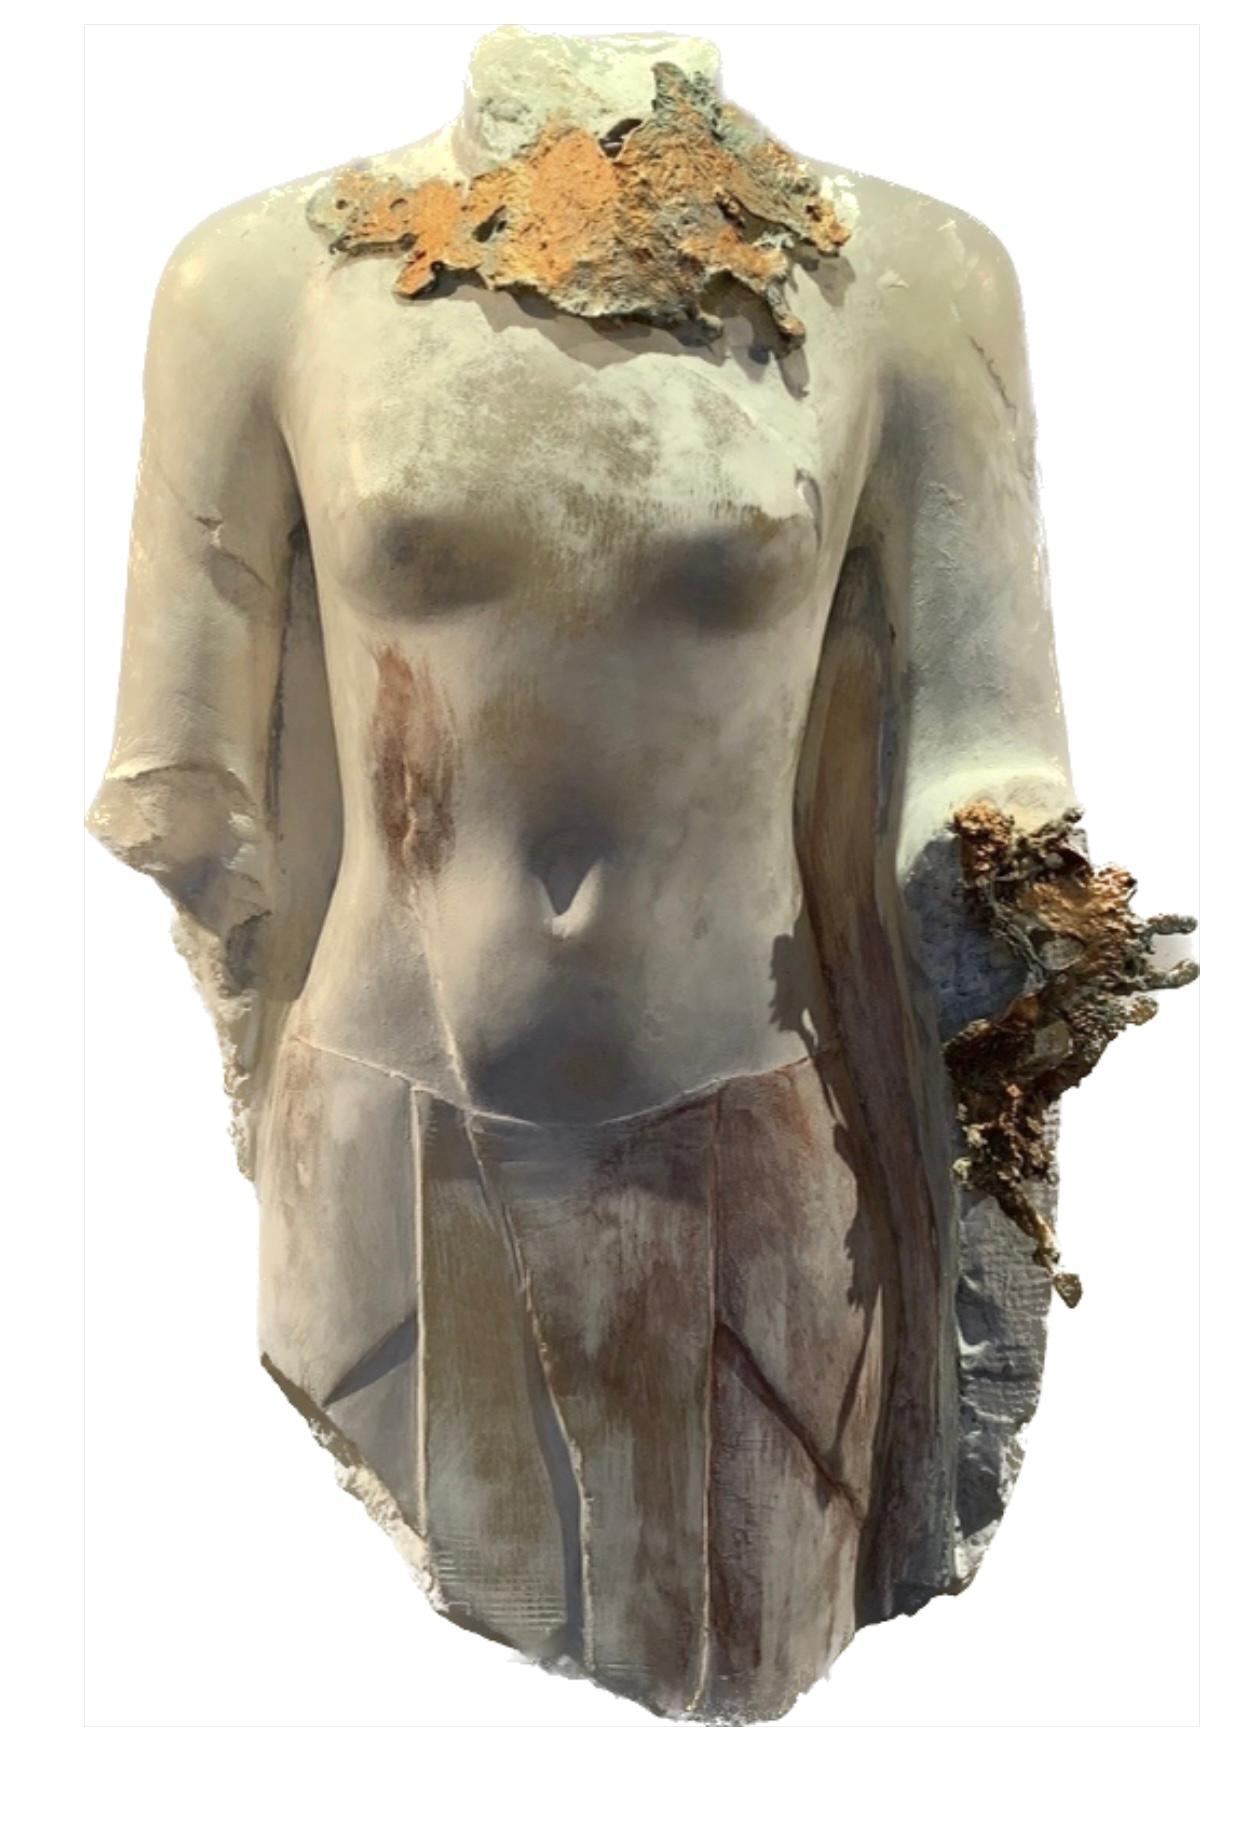 Gerti Bierenbroodspot Nude Sculpture – Arsinoe IV Alabaster-Skulptur, Gold, Kupfer, zeitgenössisch, auf Lager